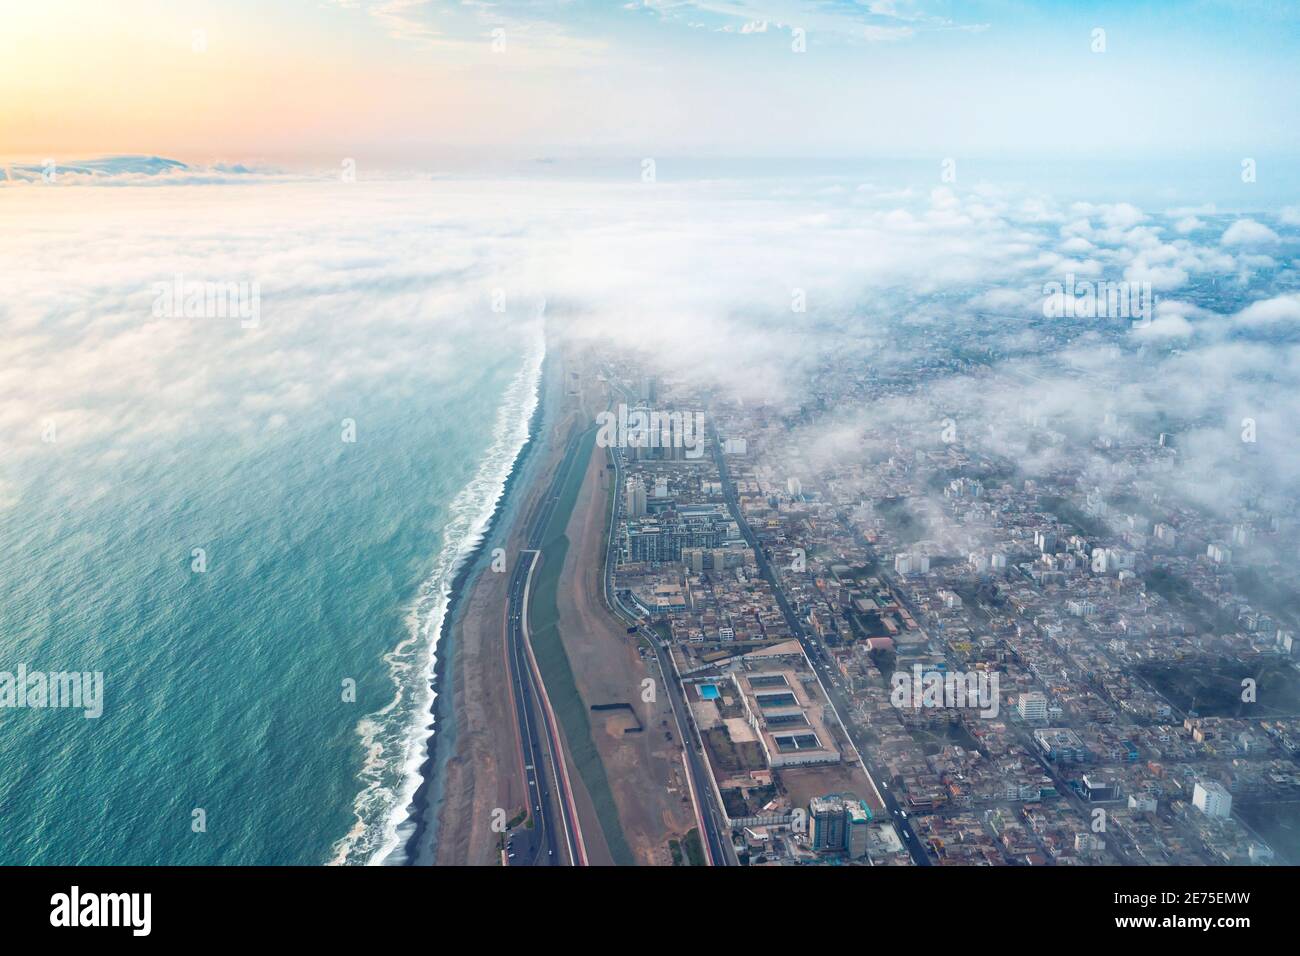 Vista aerea di Lima tra le nuvole, vista volare sopra le cime delle nuvole e svelare la città. Foto Stock